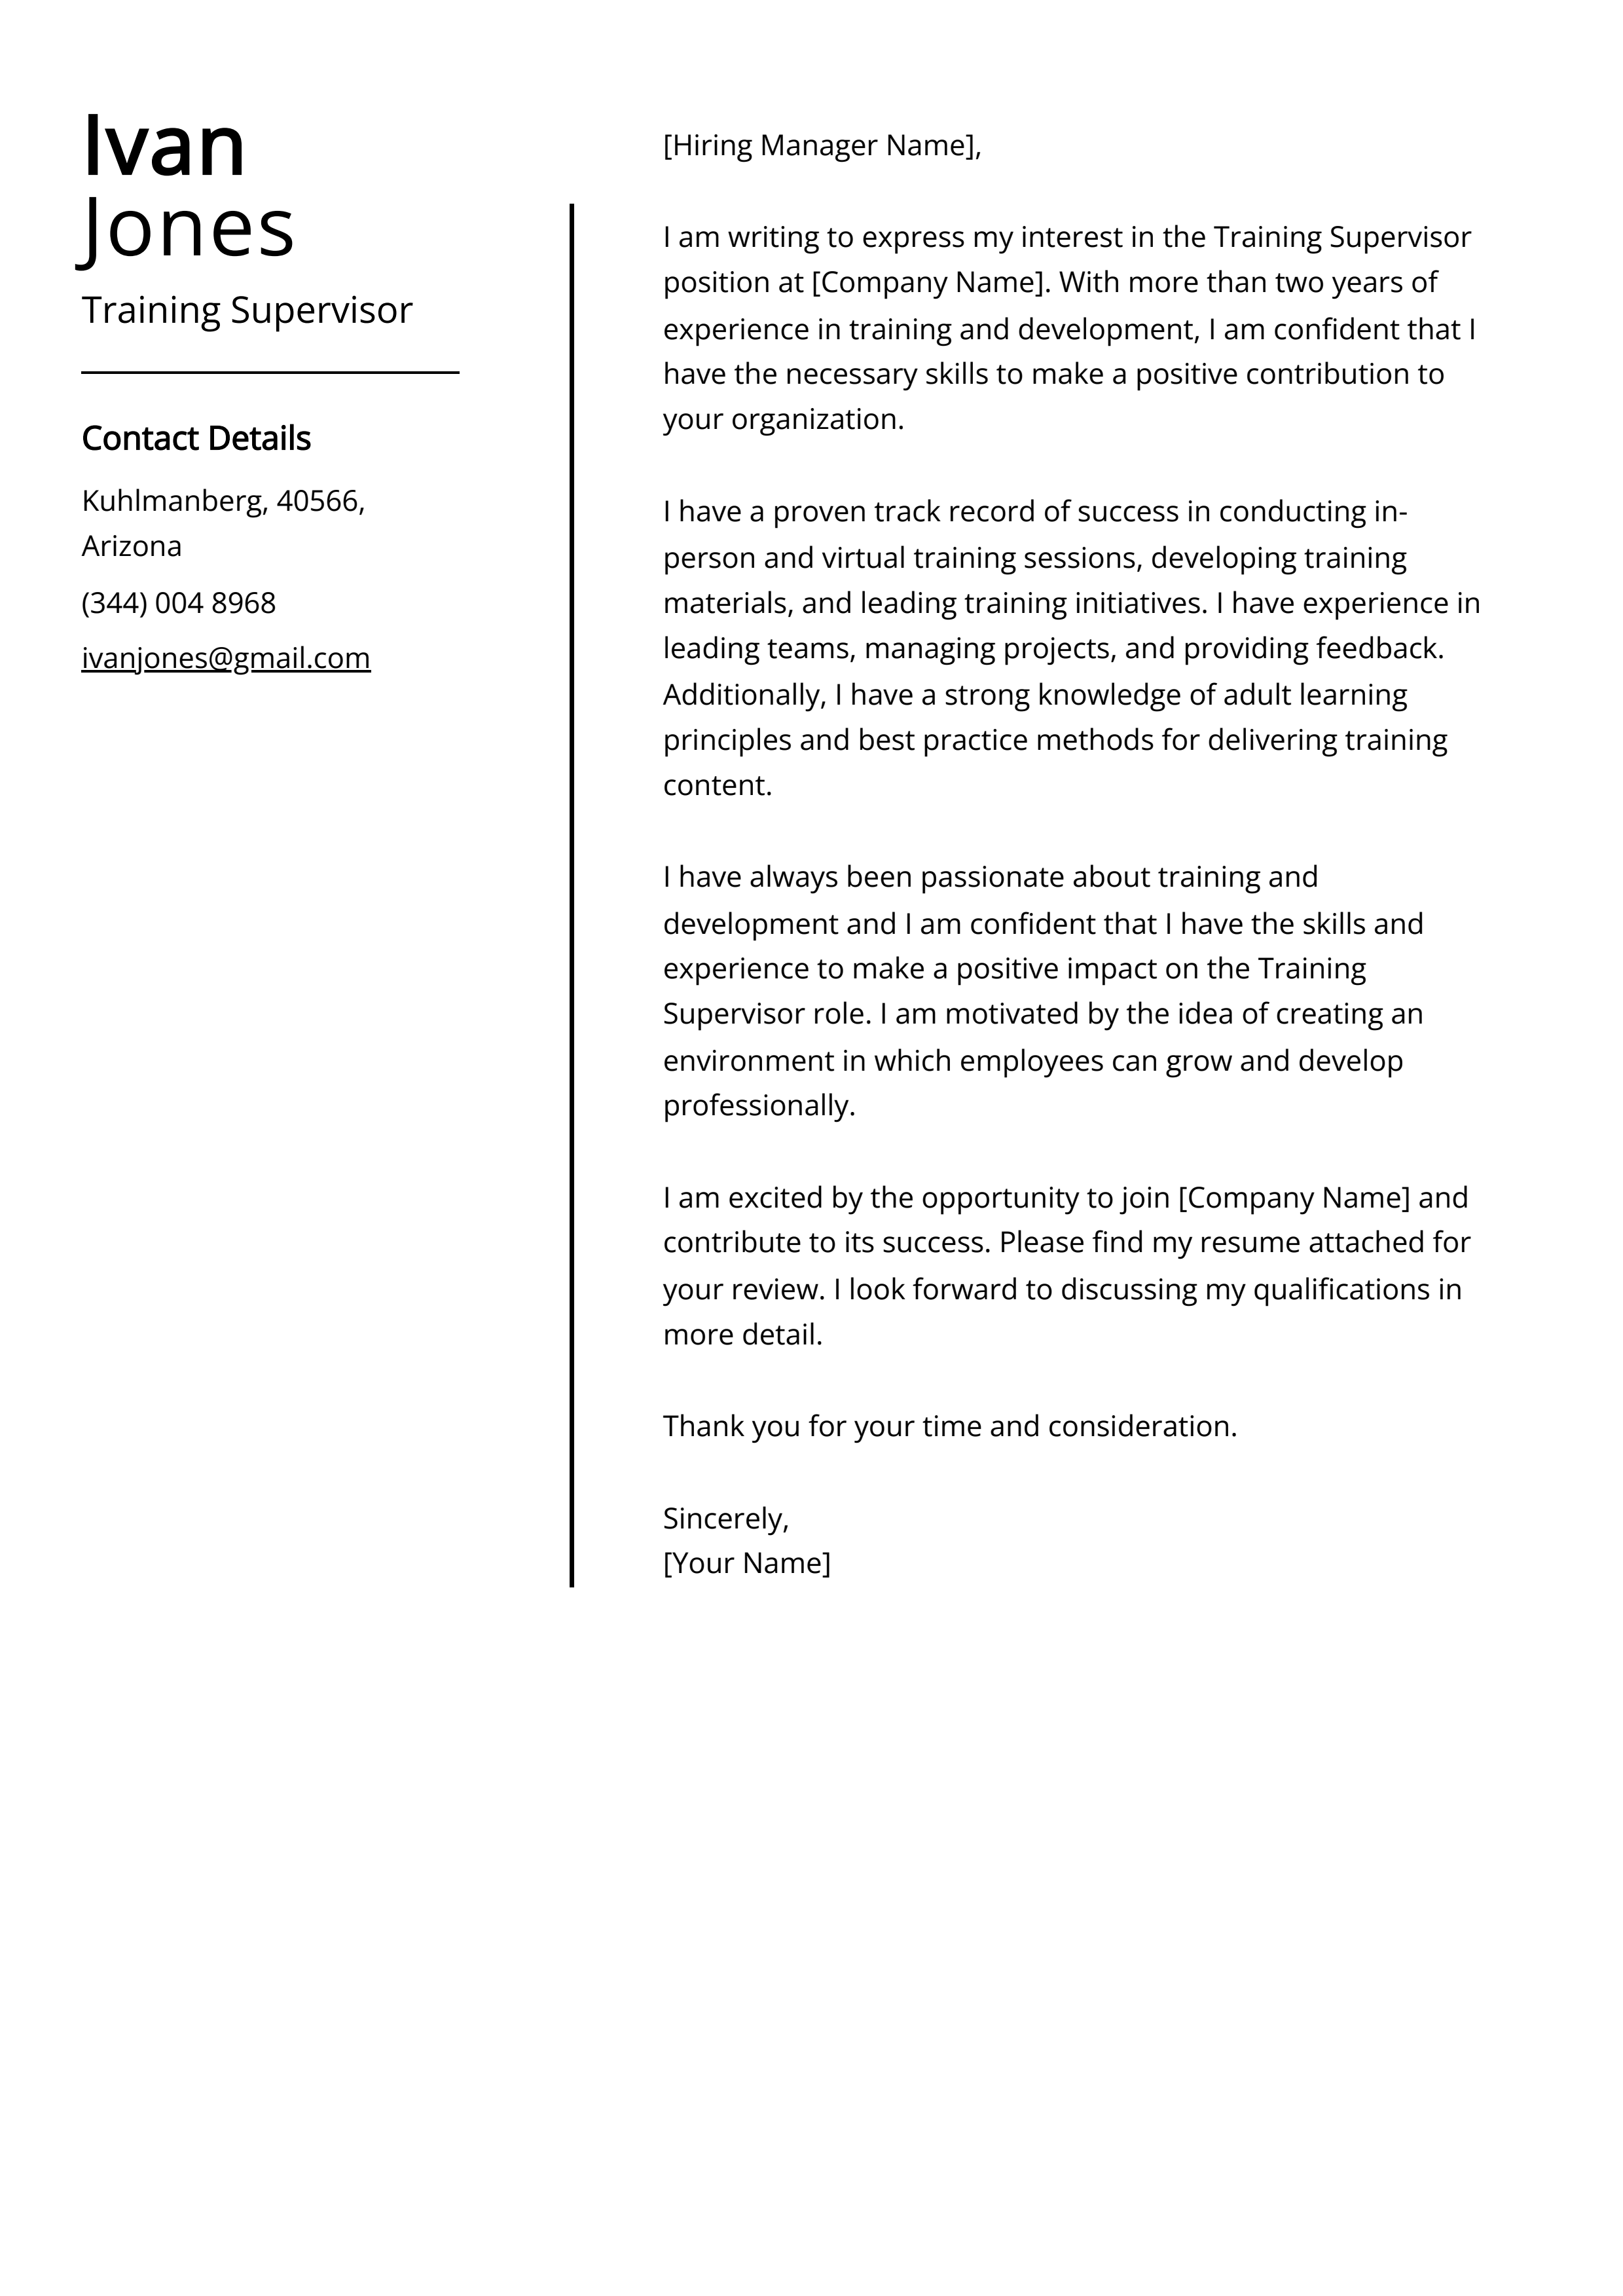 Training Supervisor Cover Letter Example